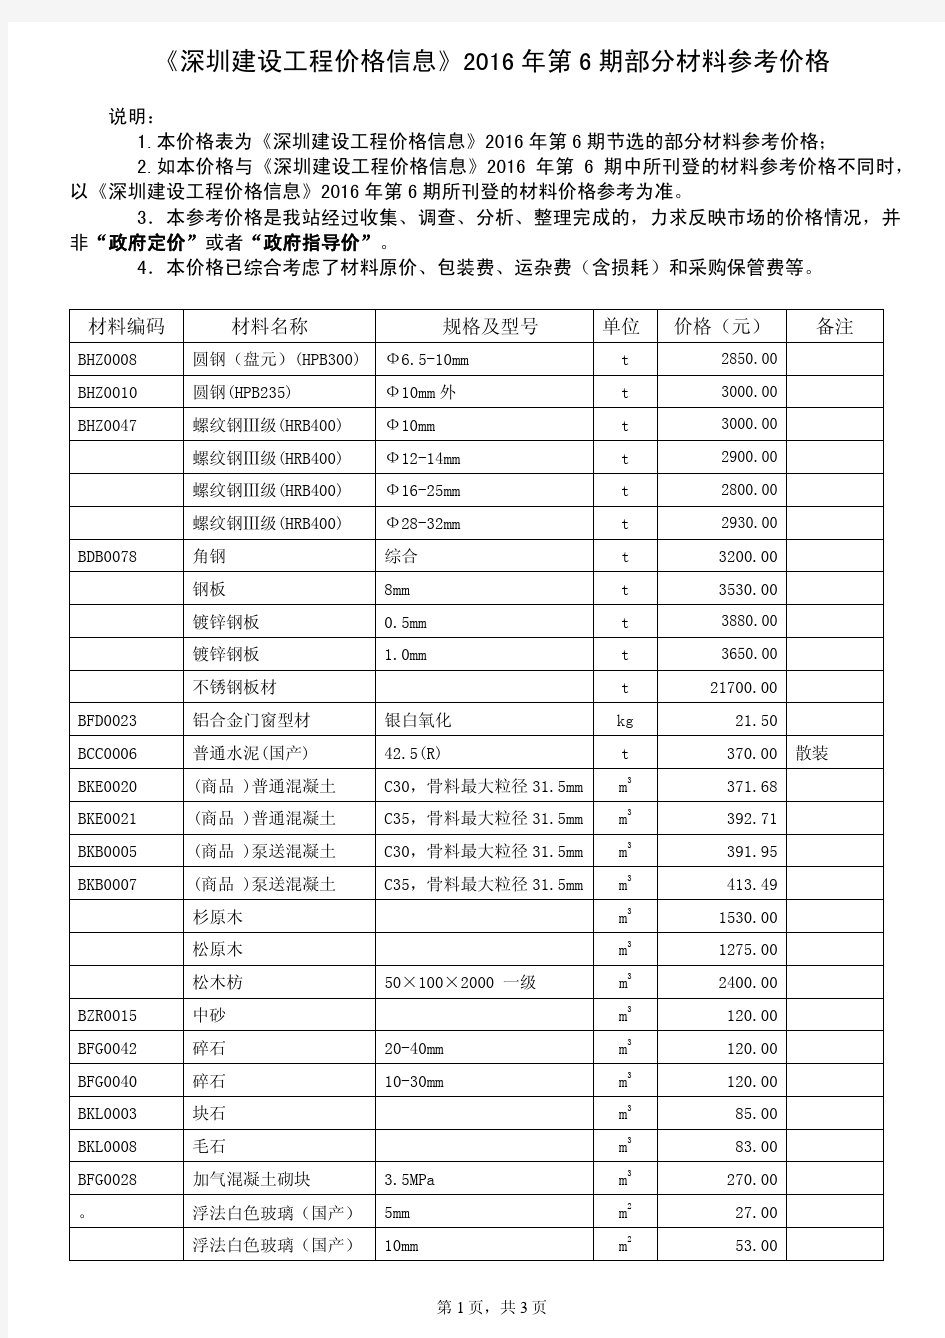 《深圳建设工程价格信息》2016年第06期部分材料参考价格